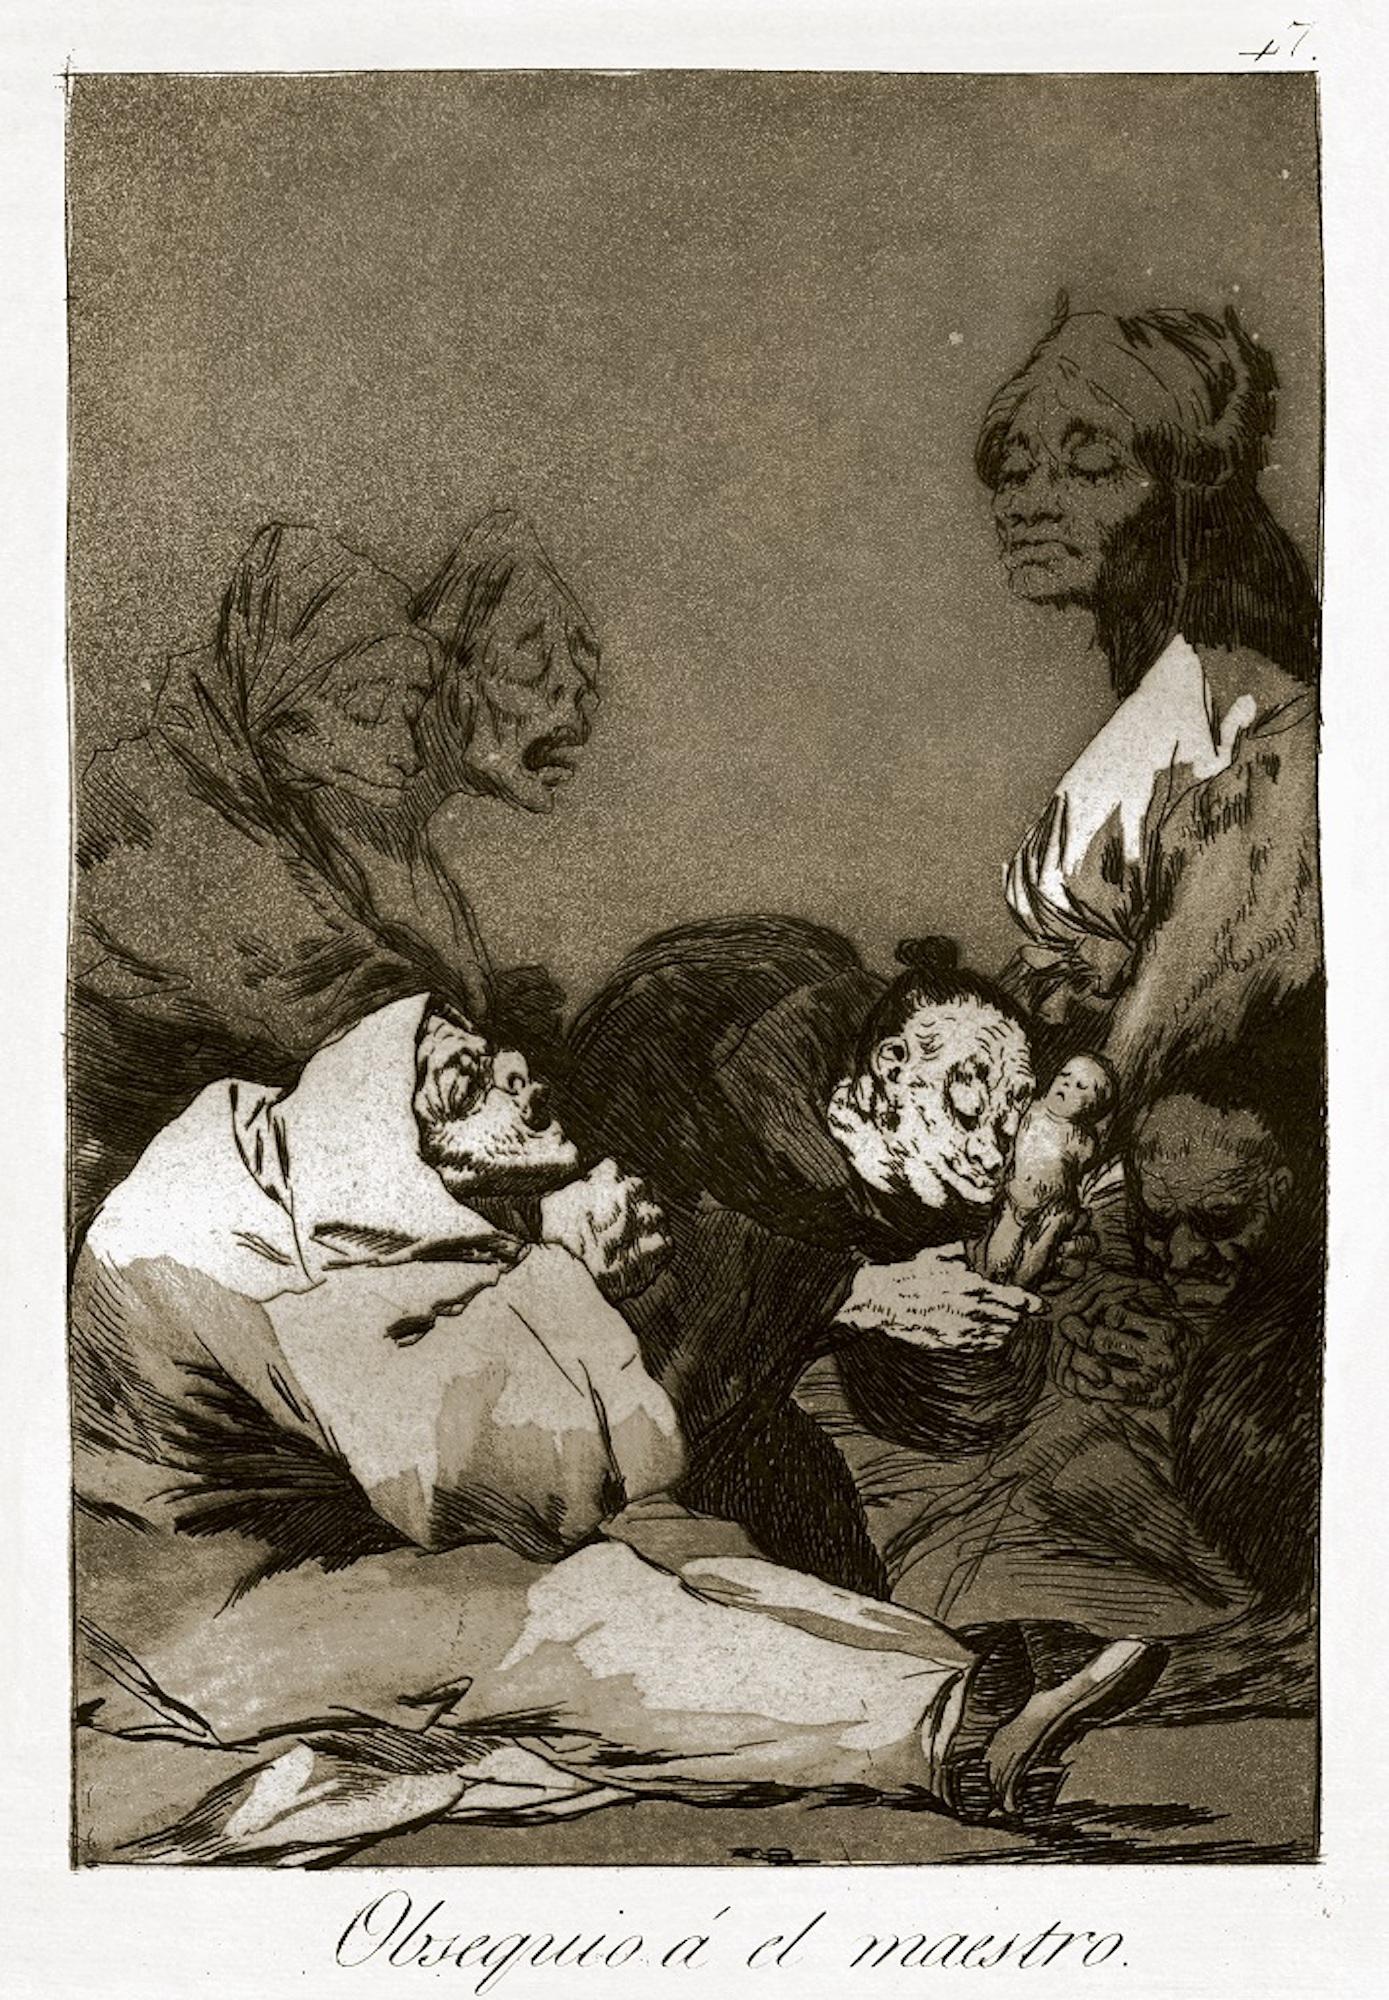 Obsequio, ein El Maestro  - Radierung und Aquatinta von Francisco Goya - 1869